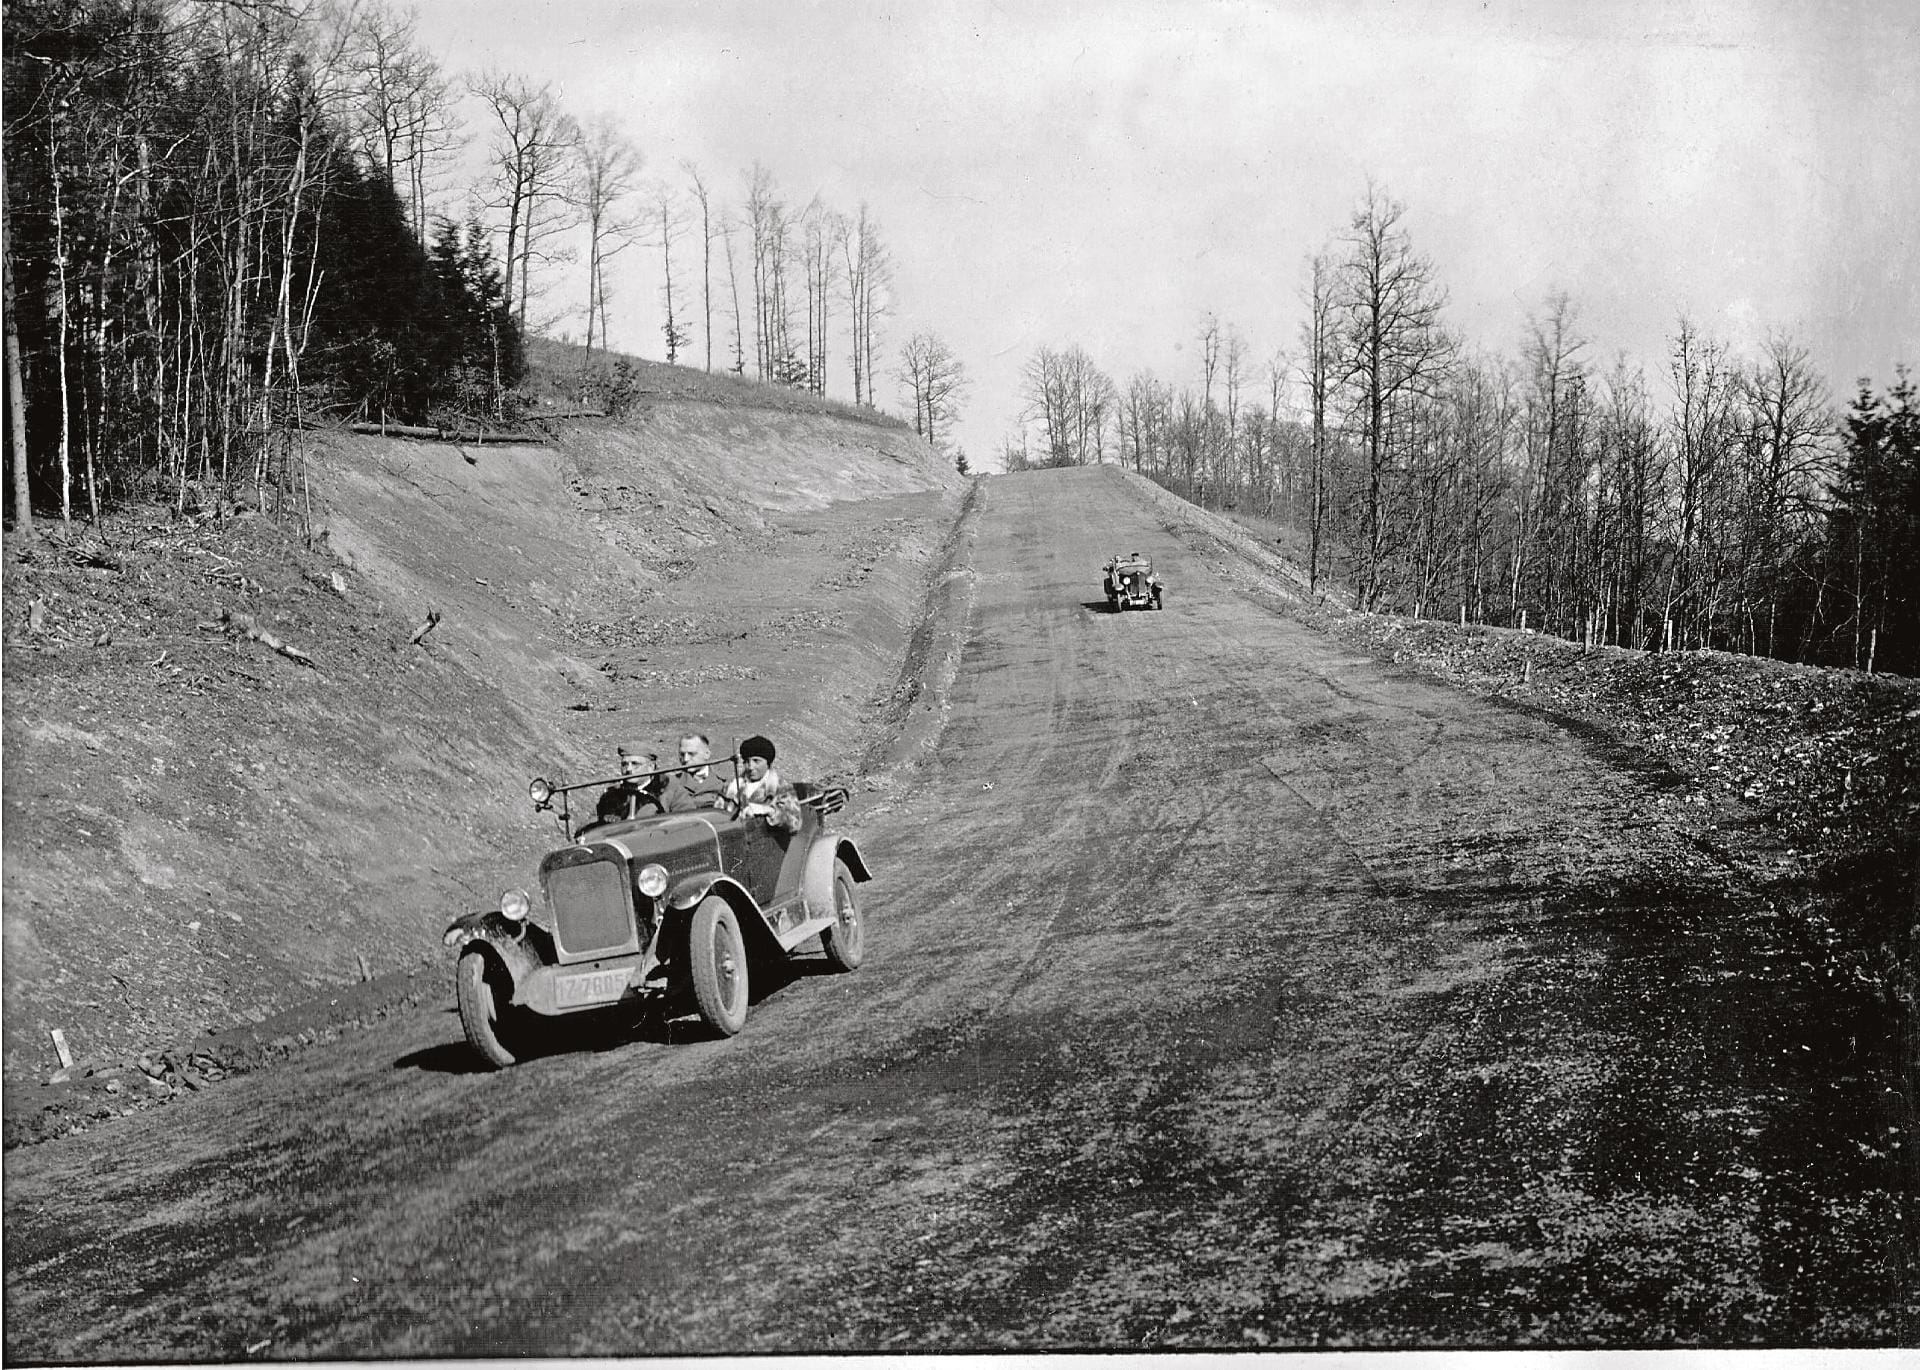 1925 begann die Geschichte des Nürburgrings und der Nordschleife. In weniger als zwei Jahren wurde die Stecke gebaut bis sie schließlich im Juni 1927 eröffnet wurde.